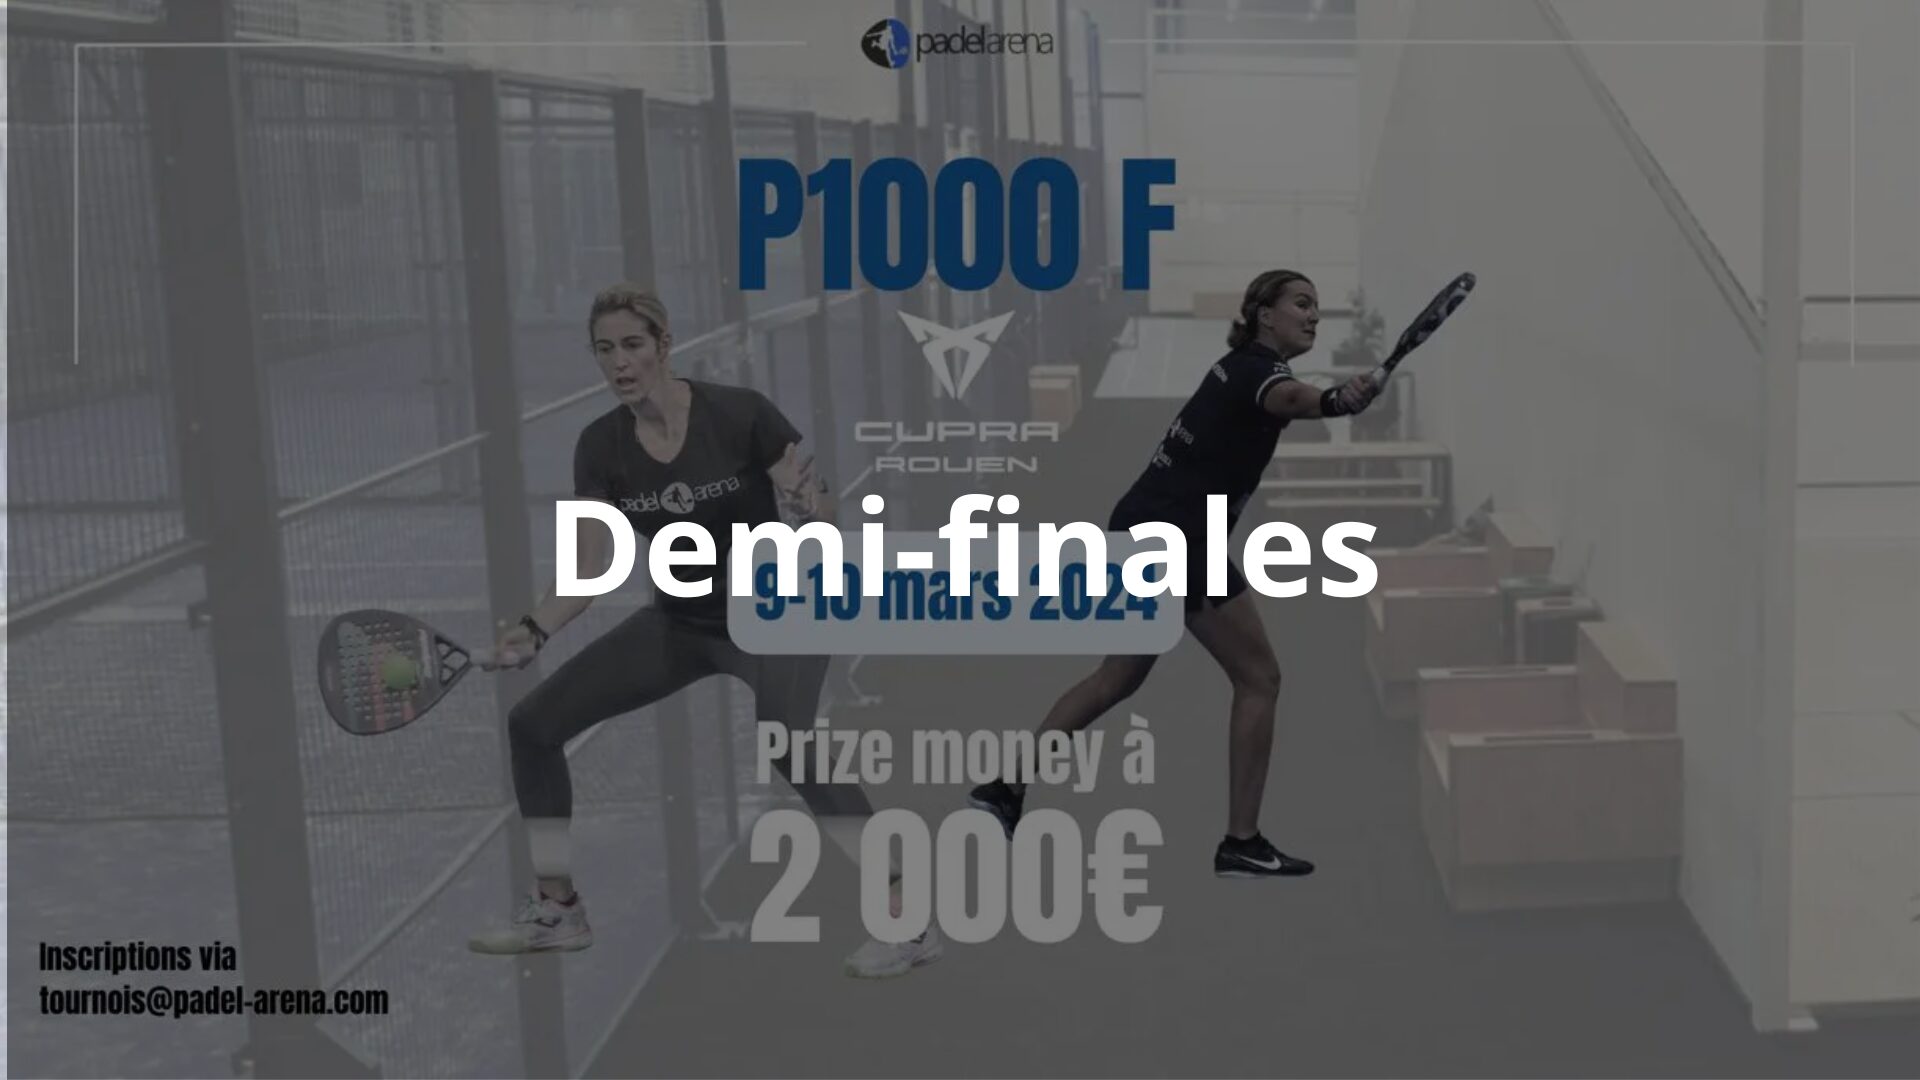 P1000 Padel Arena Cupra Rouen – Início das semifinais ao vivo!